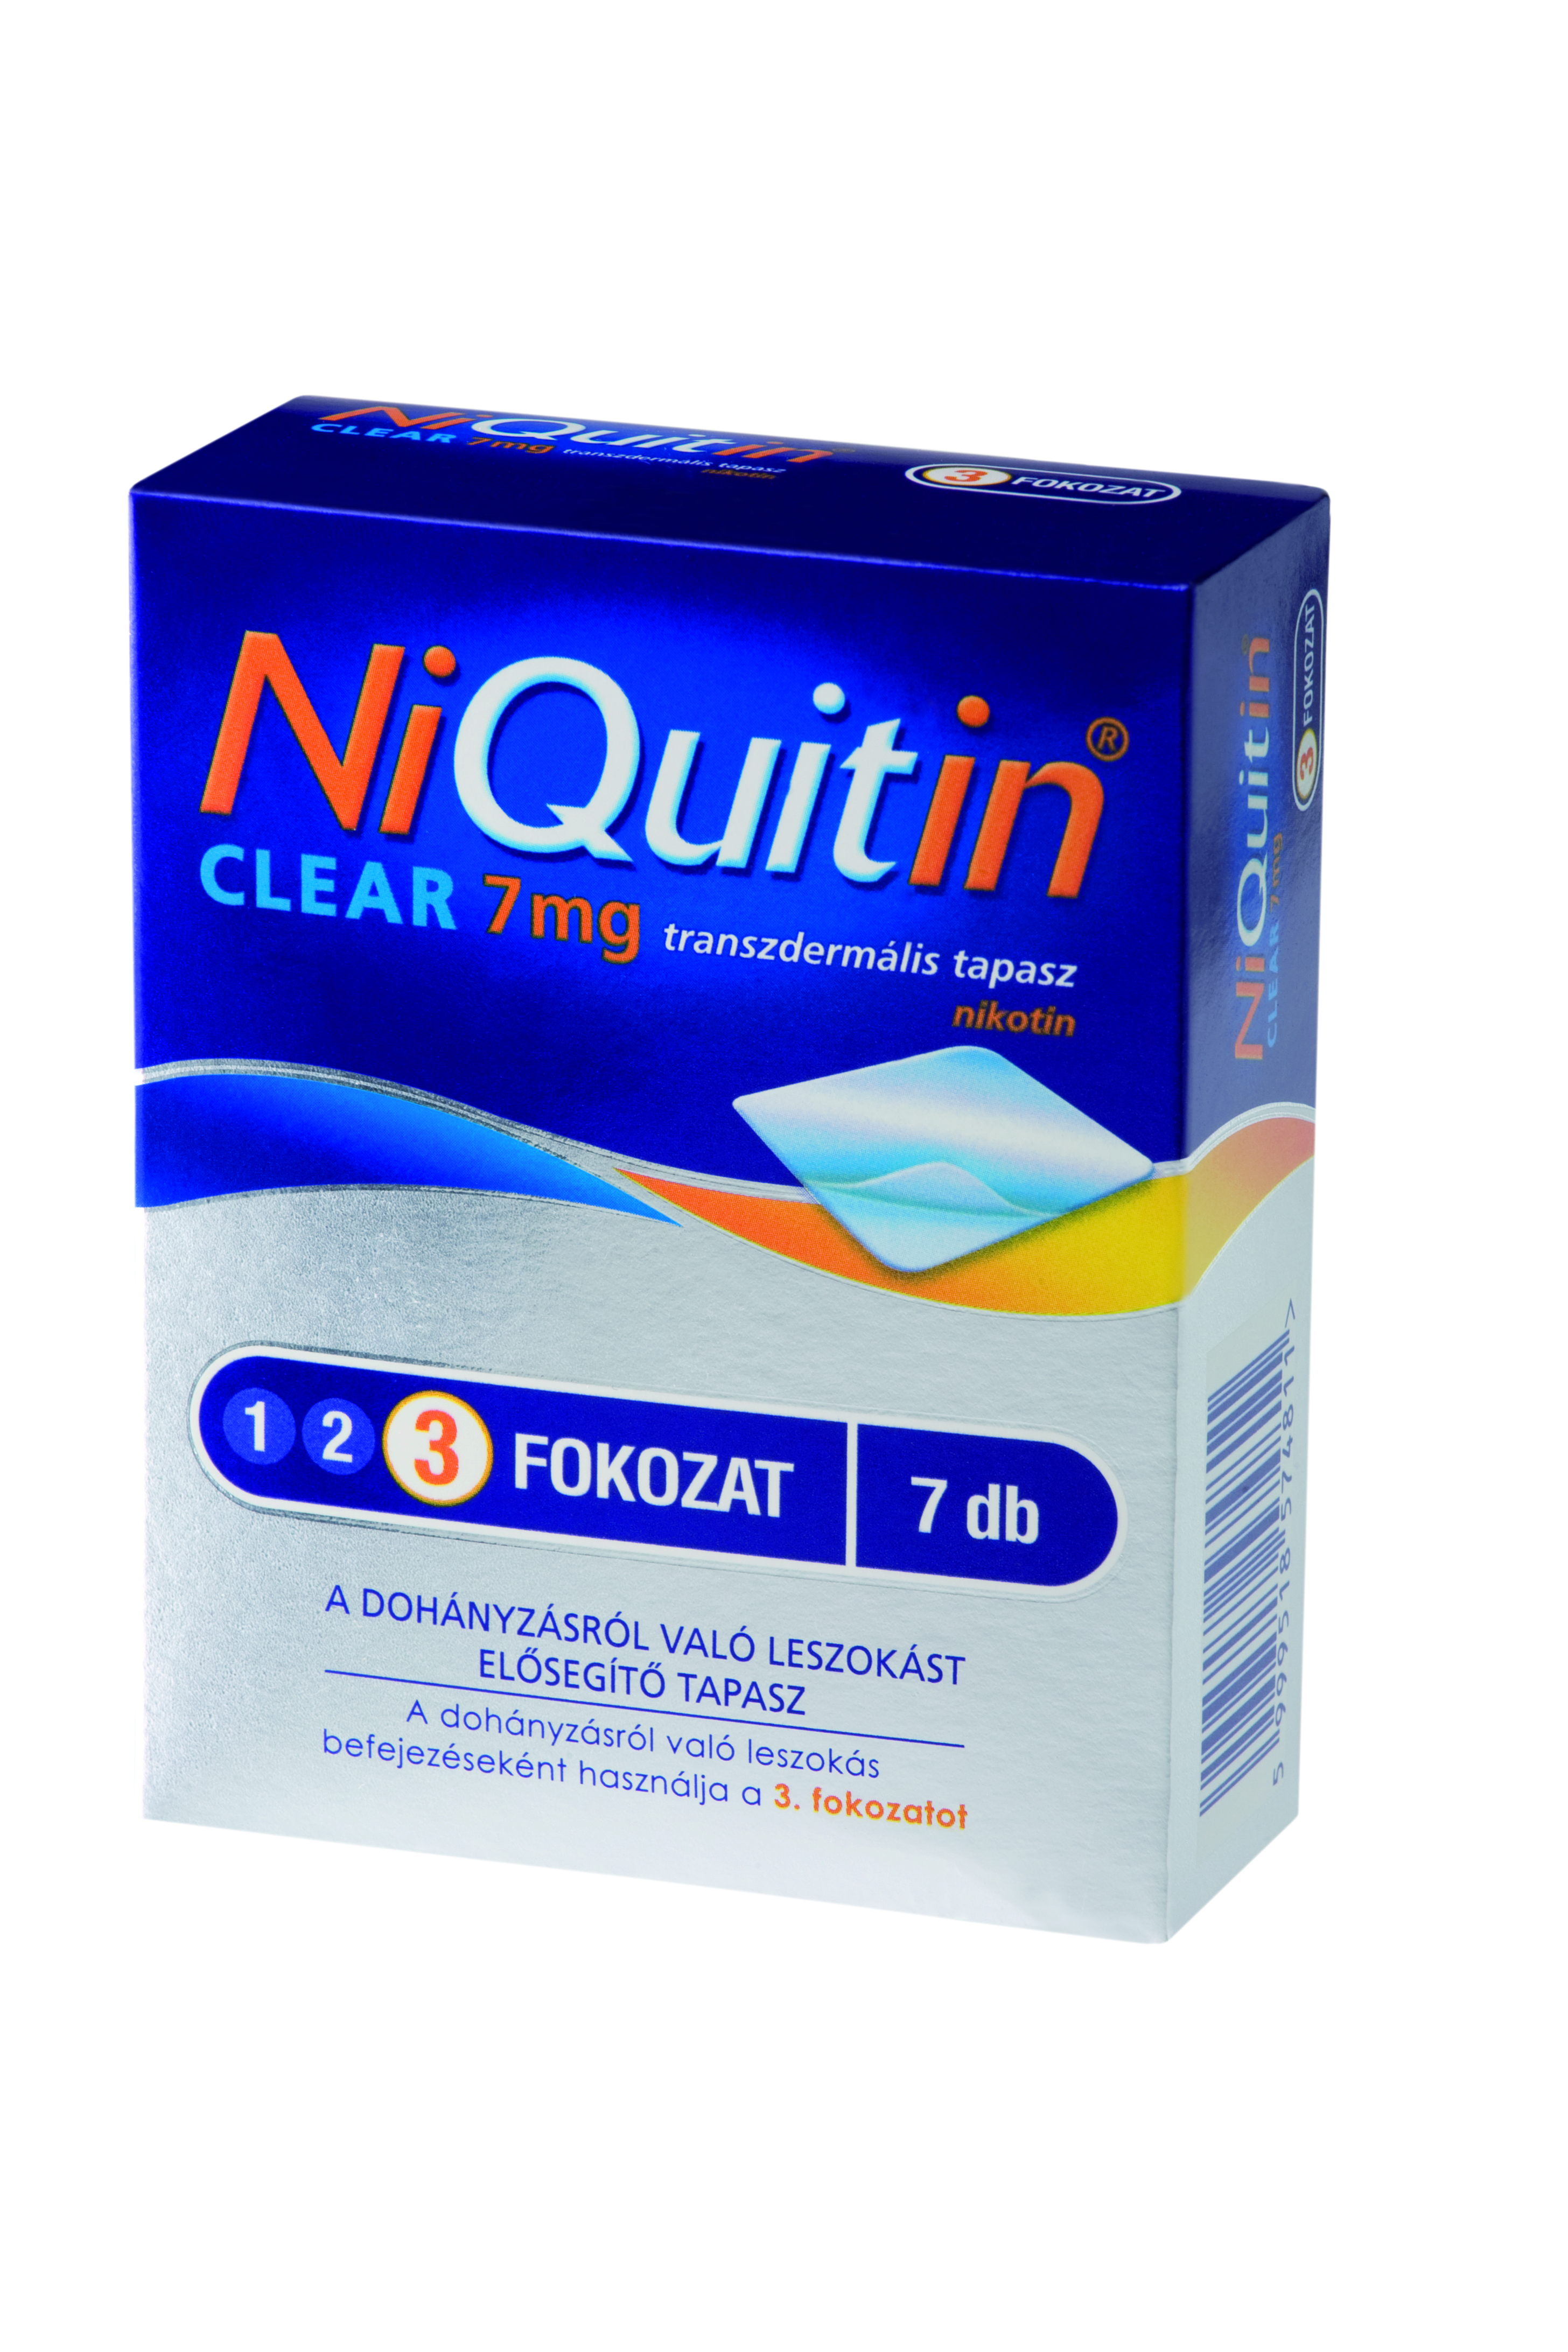 NIQUITIN CLEAR 14 mg transzdermális tapasz betegtájékoztató